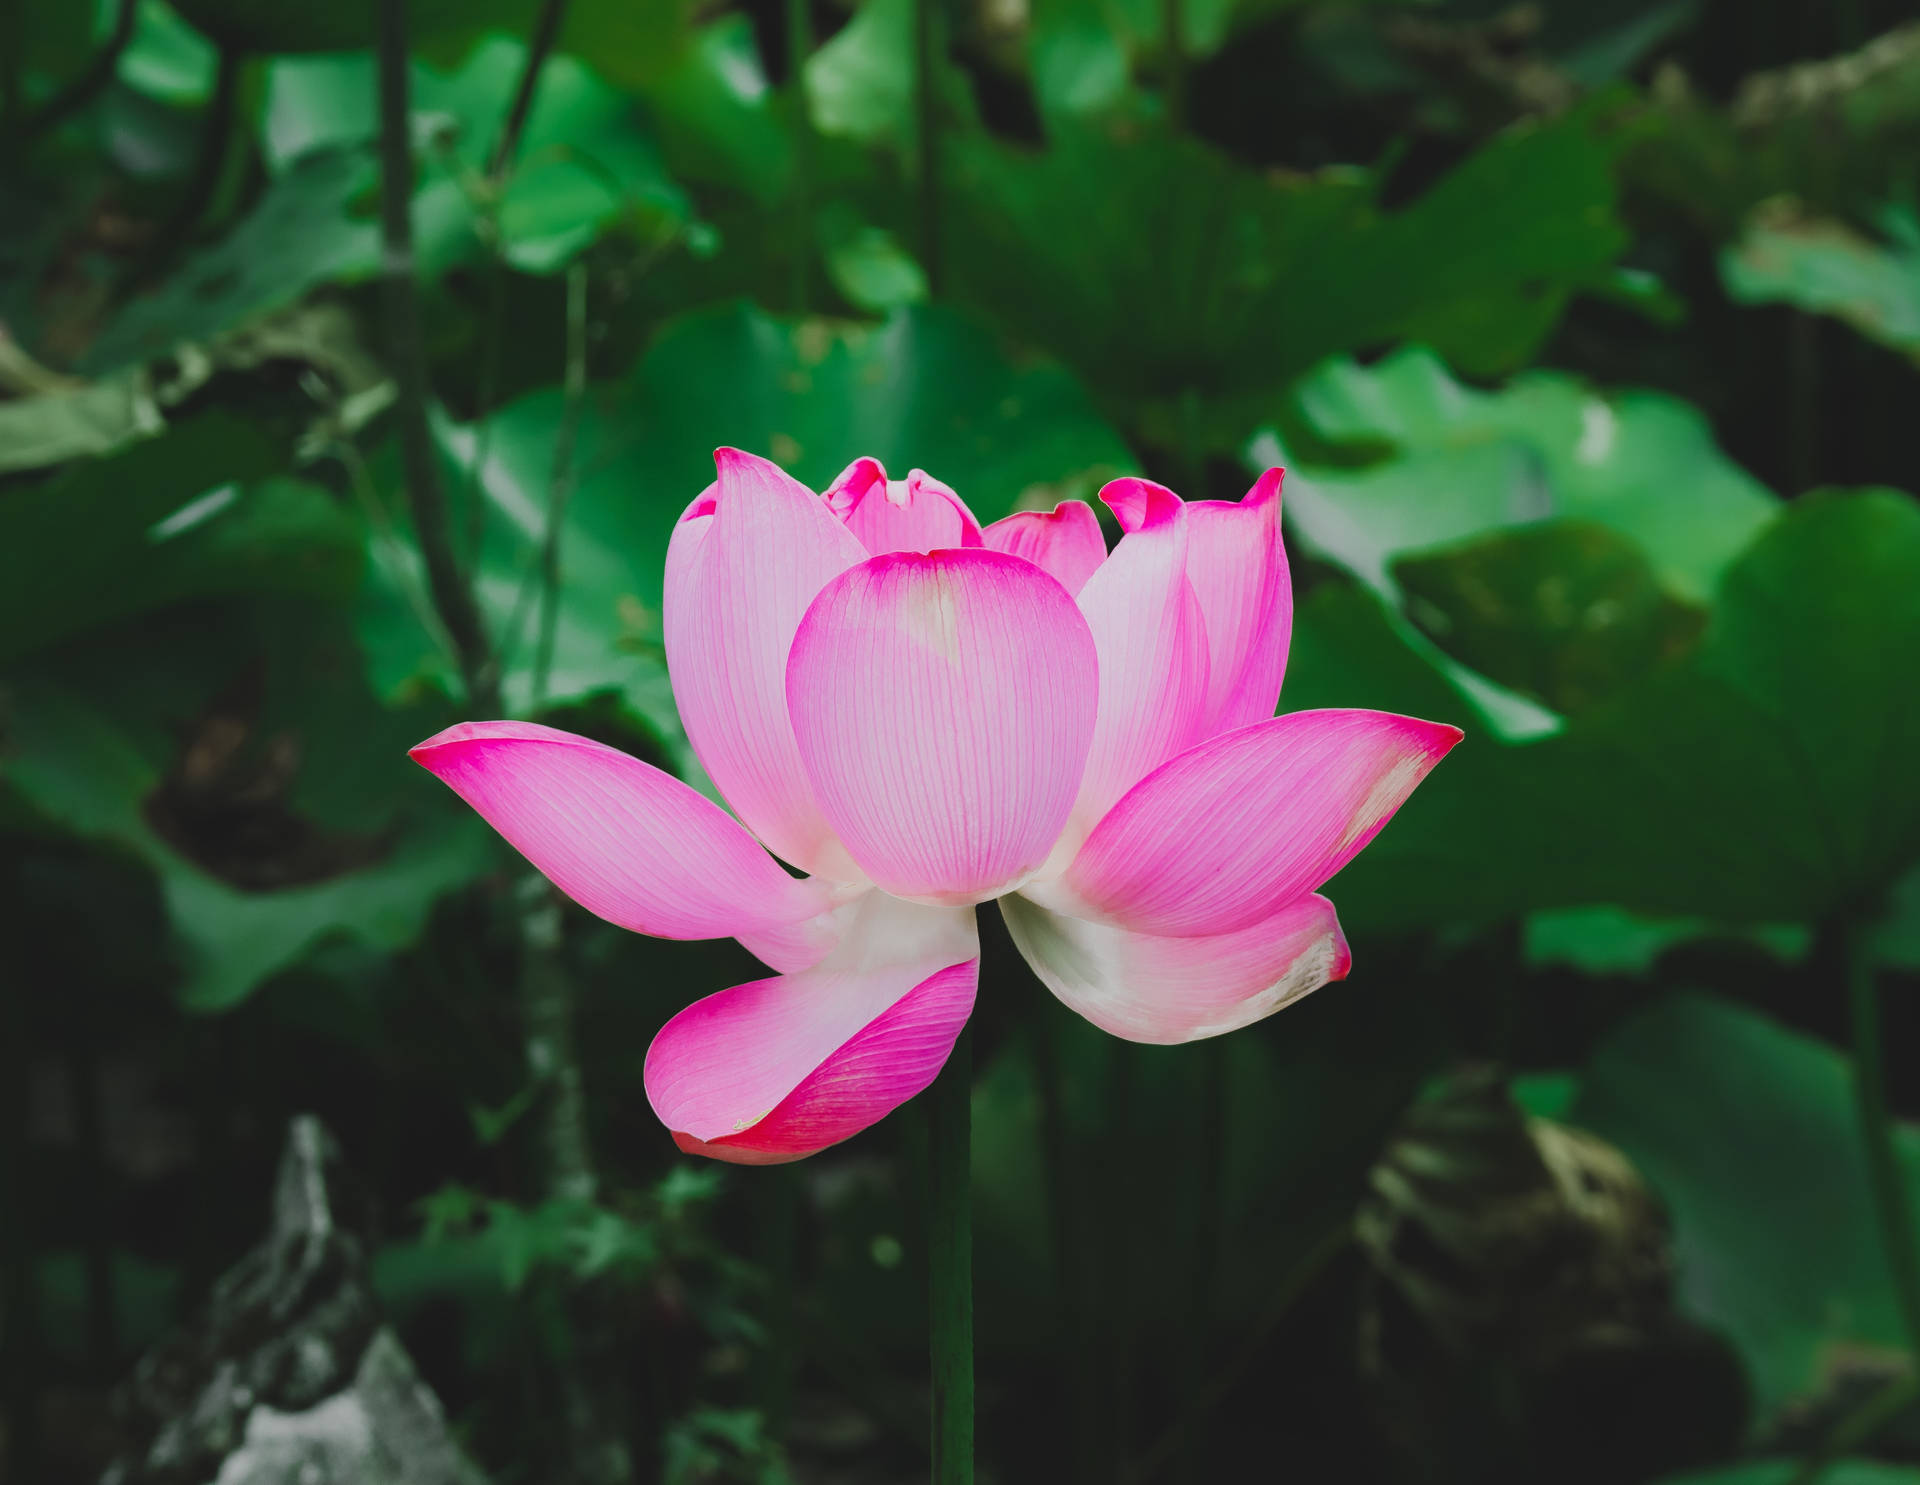 Free Lotus Flower Wallpaper Downloads, [200+] Lotus Flower Wallpapers for  FREE 